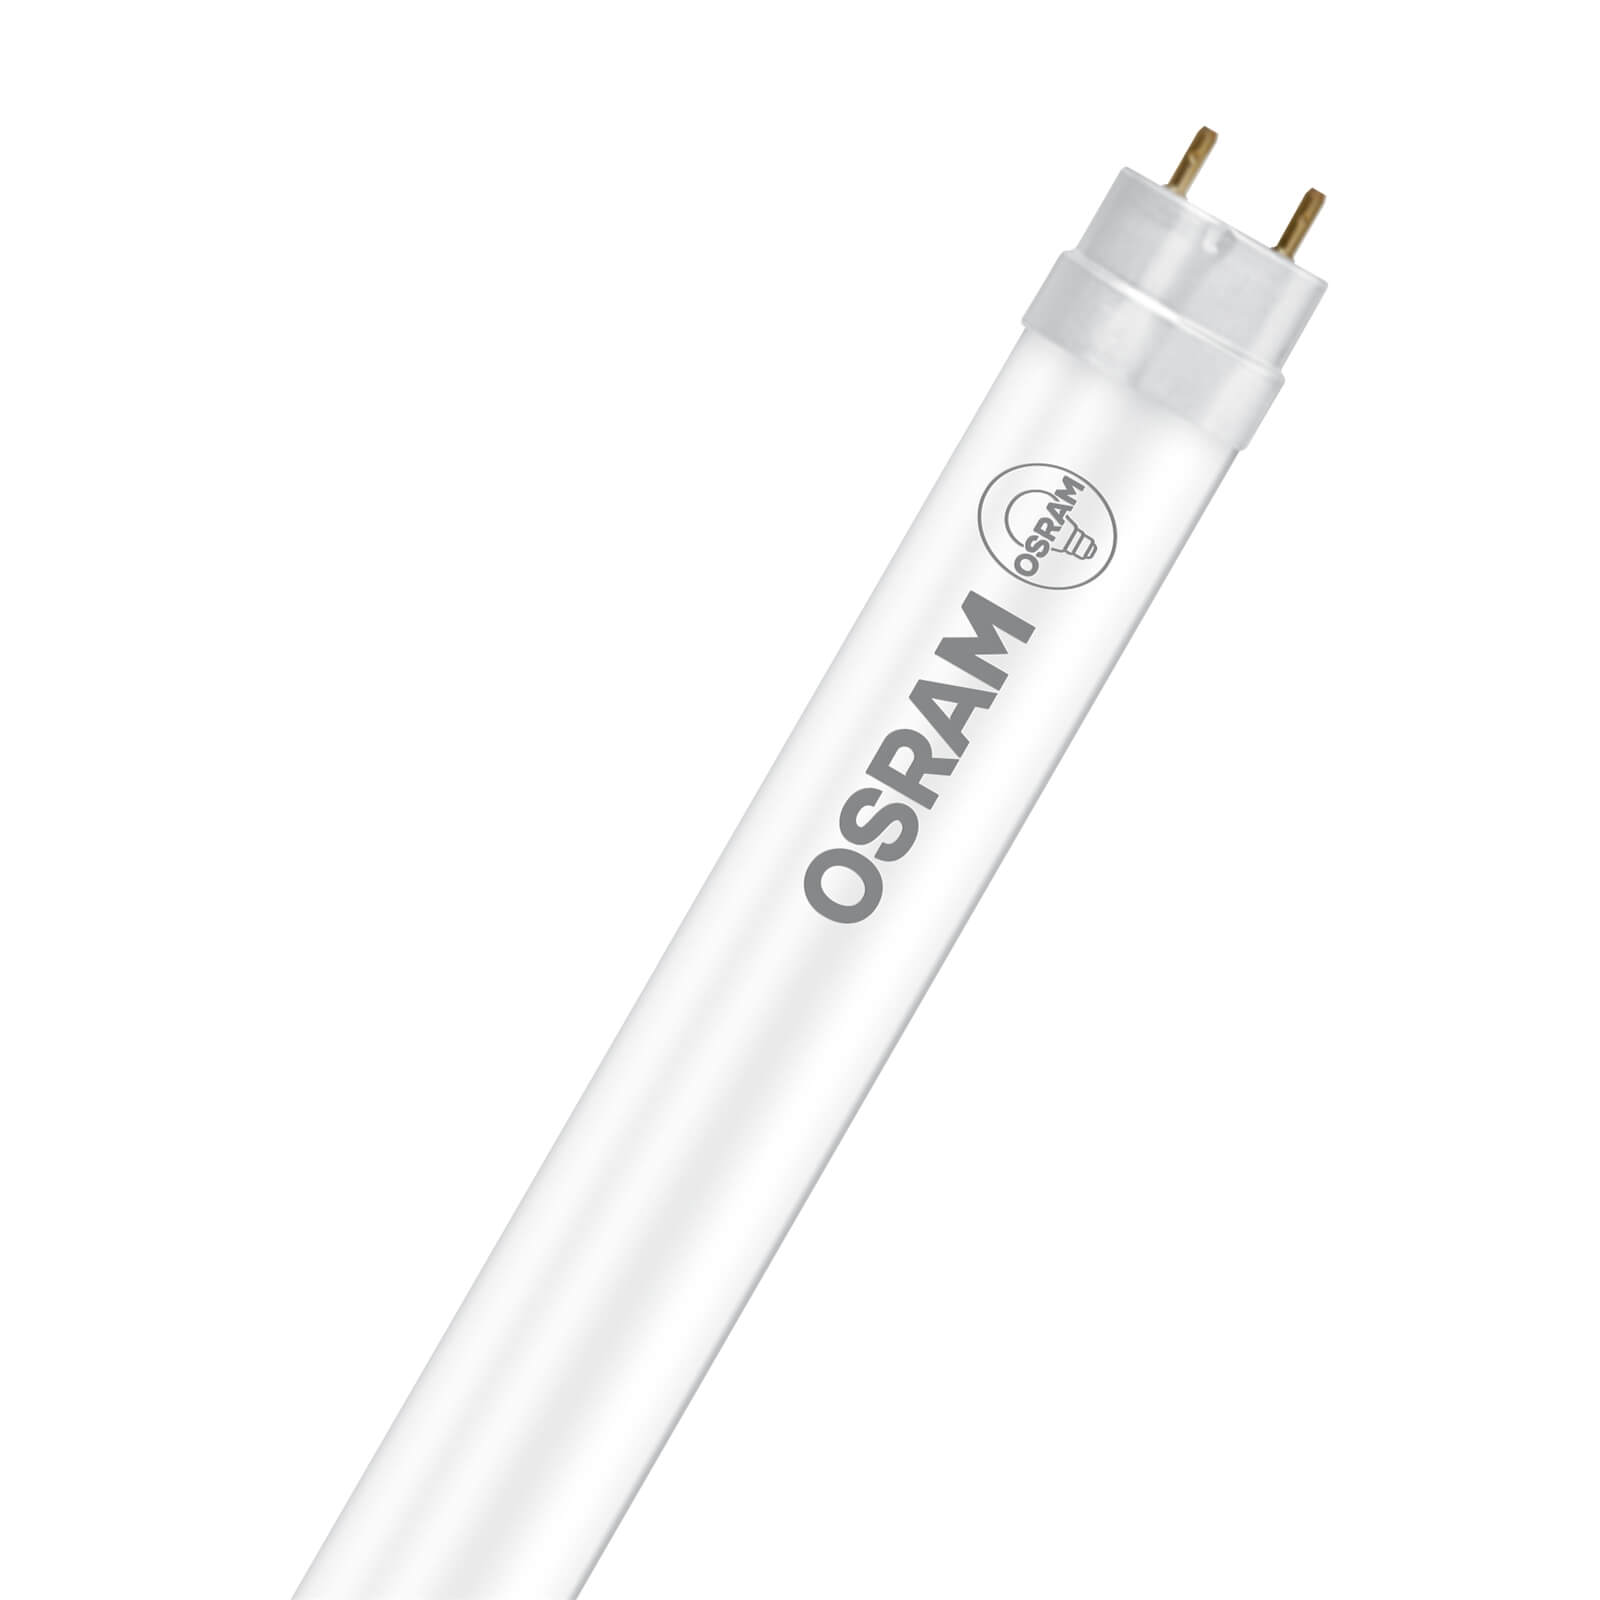 Osram LED Tube 600mm 7.6W Cool White Light Bulb